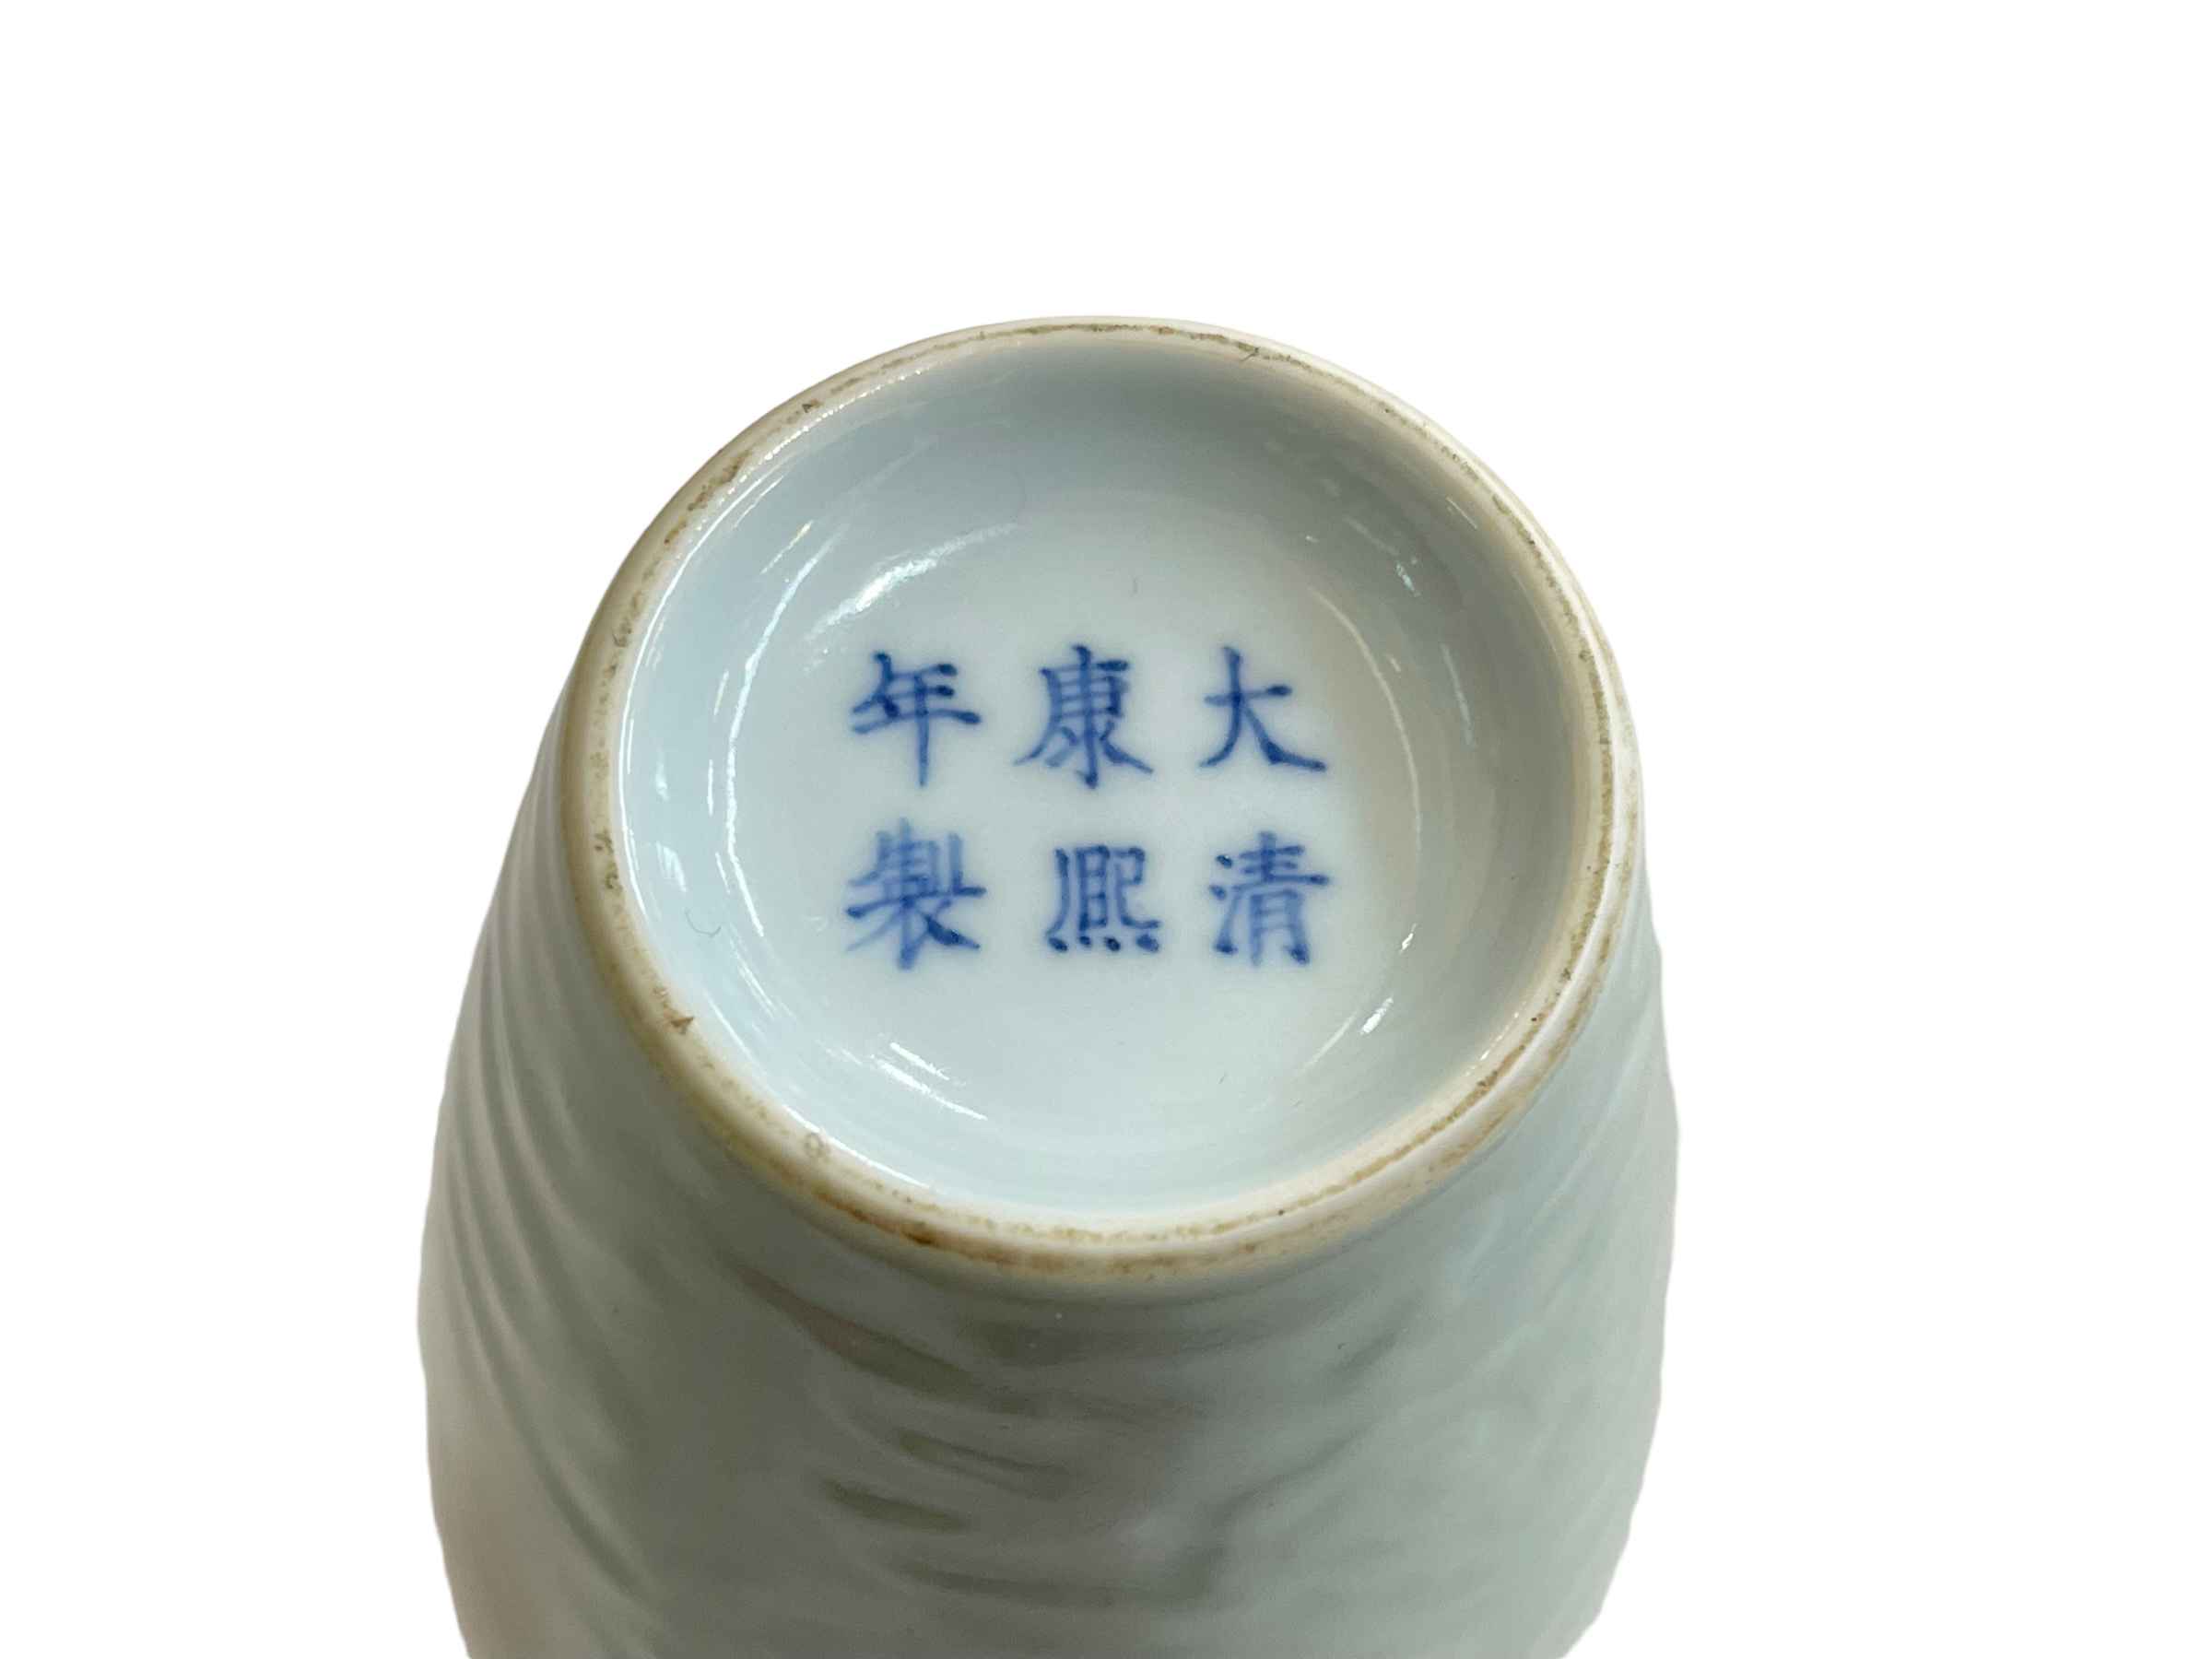 Chinese Celadon china vase with raised dragon decoration, six character Kangxi mark to base, 21cm. - Image 4 of 4